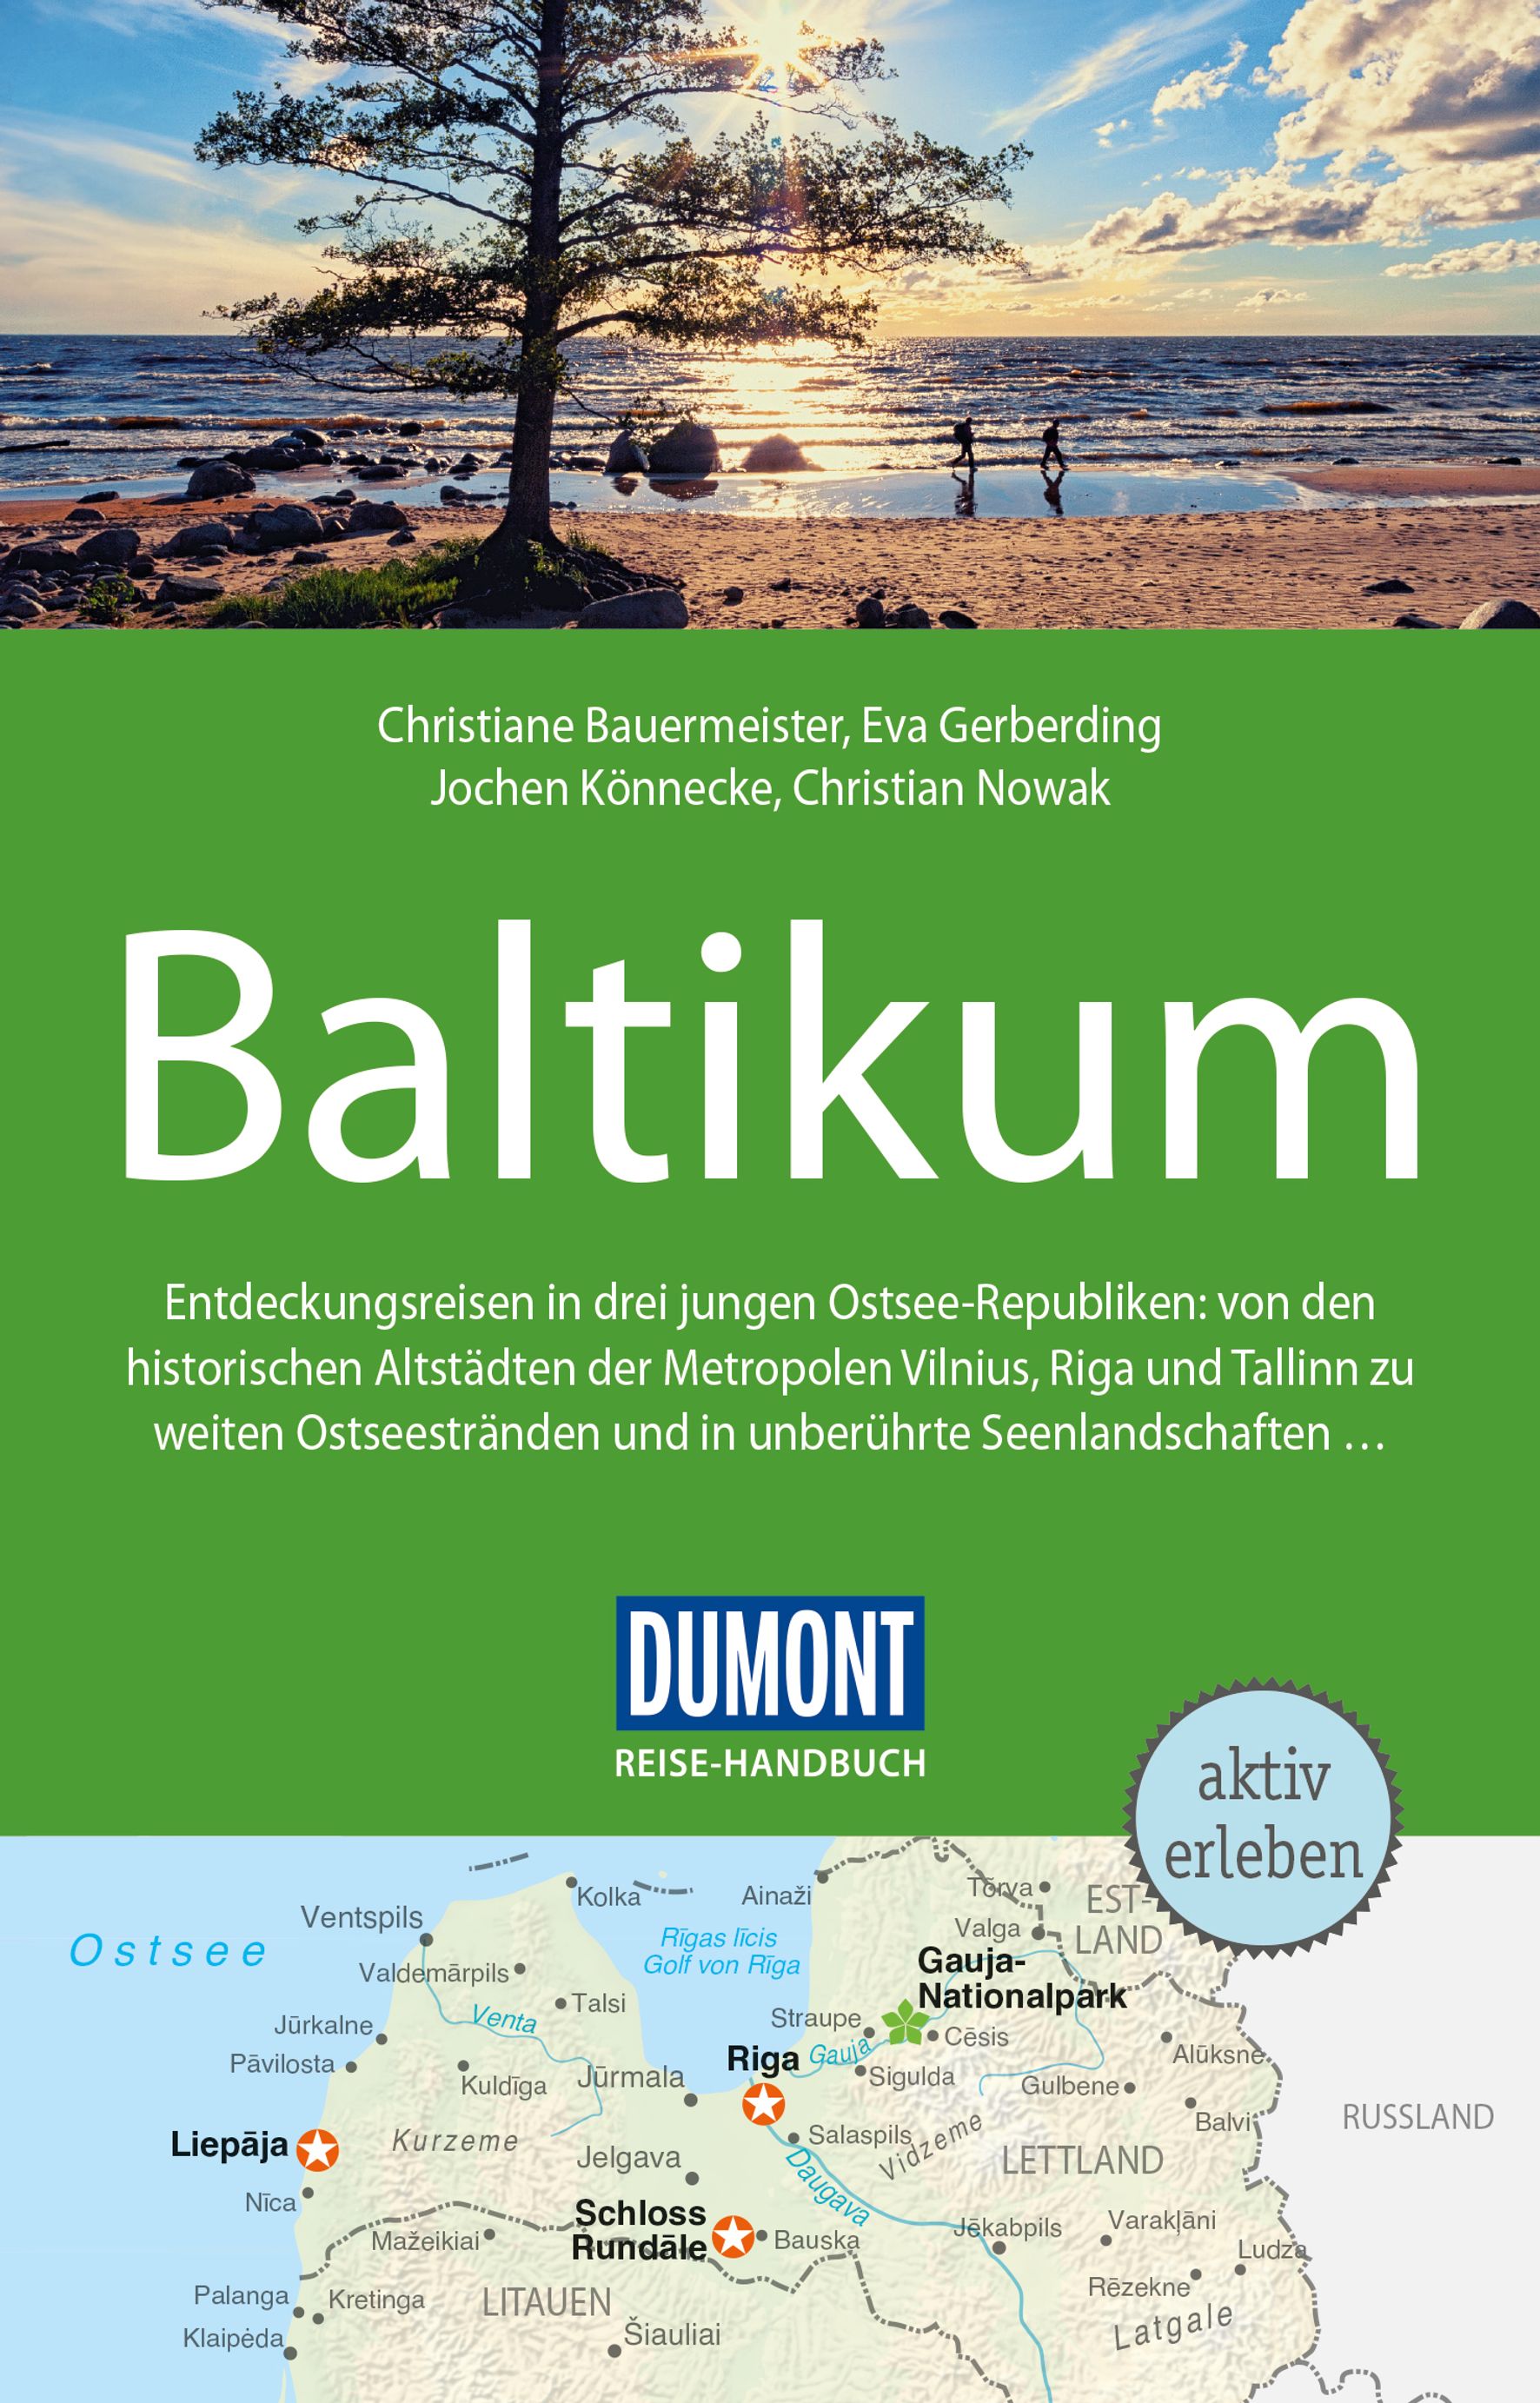 MAIRDUMONT Baltikum, Litauen, Lettland (eBook)